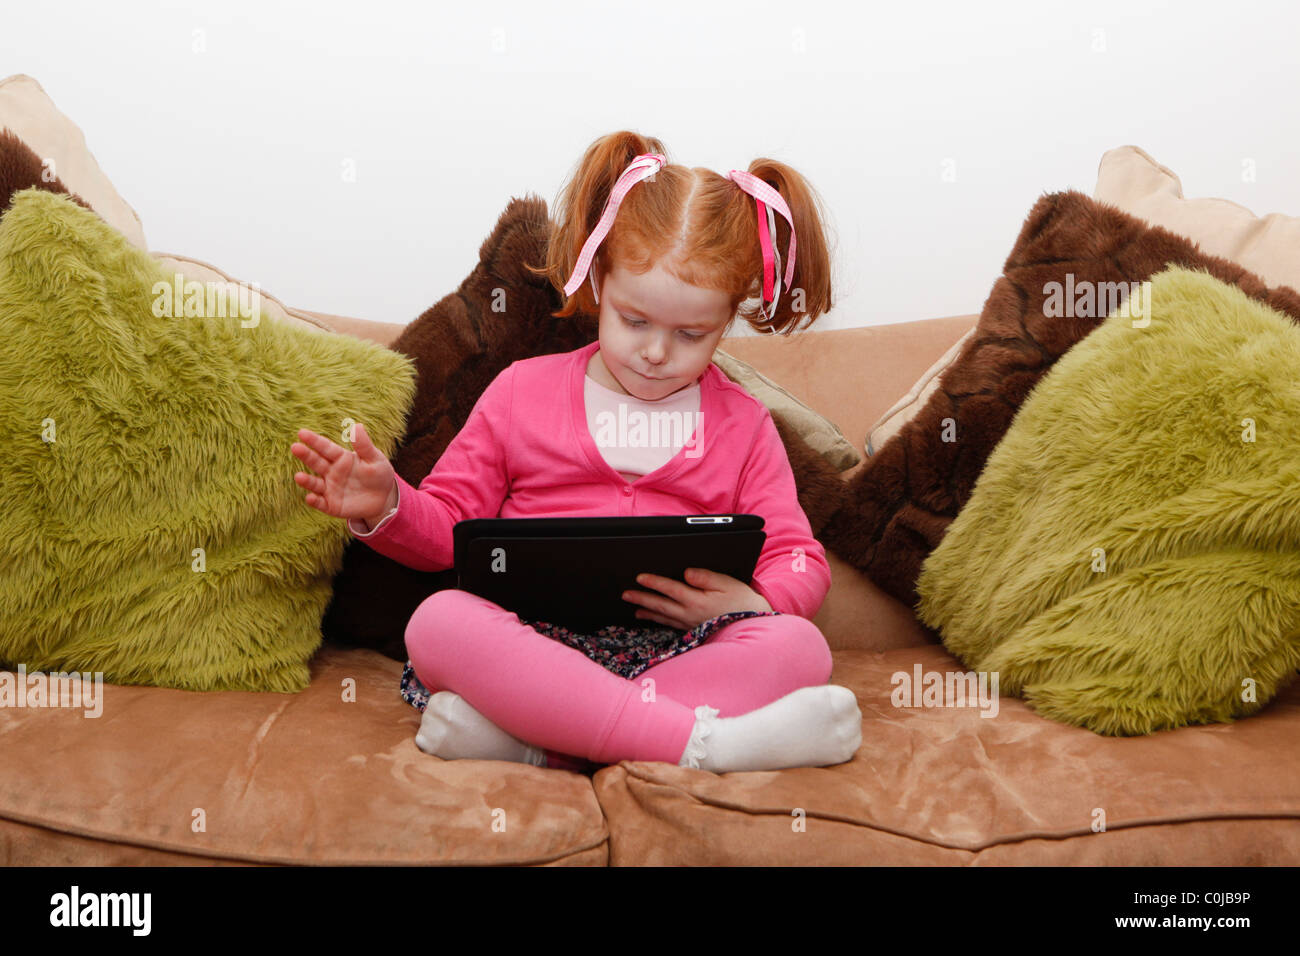 Petite fille sur un ordinateur tablette, assis sur un canapé Banque D'Images